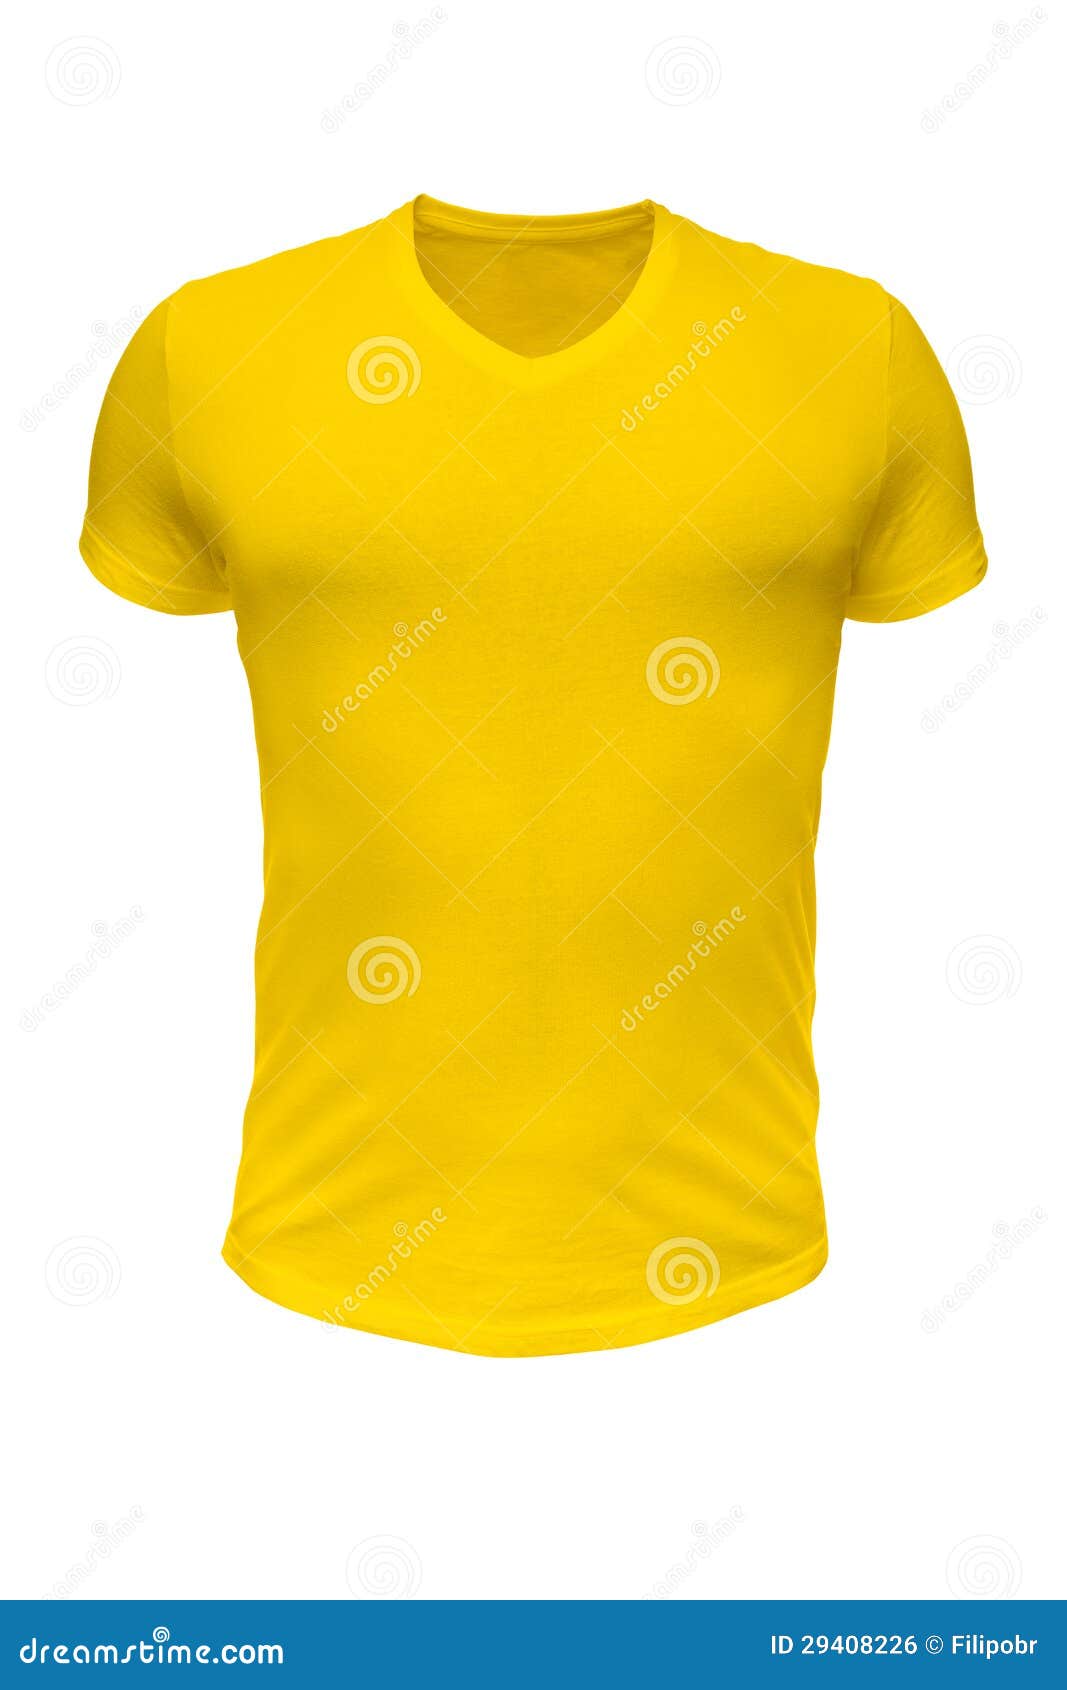 Camiseta amarilla del oro foto de archivo. Imagen de publicidad - 29408226